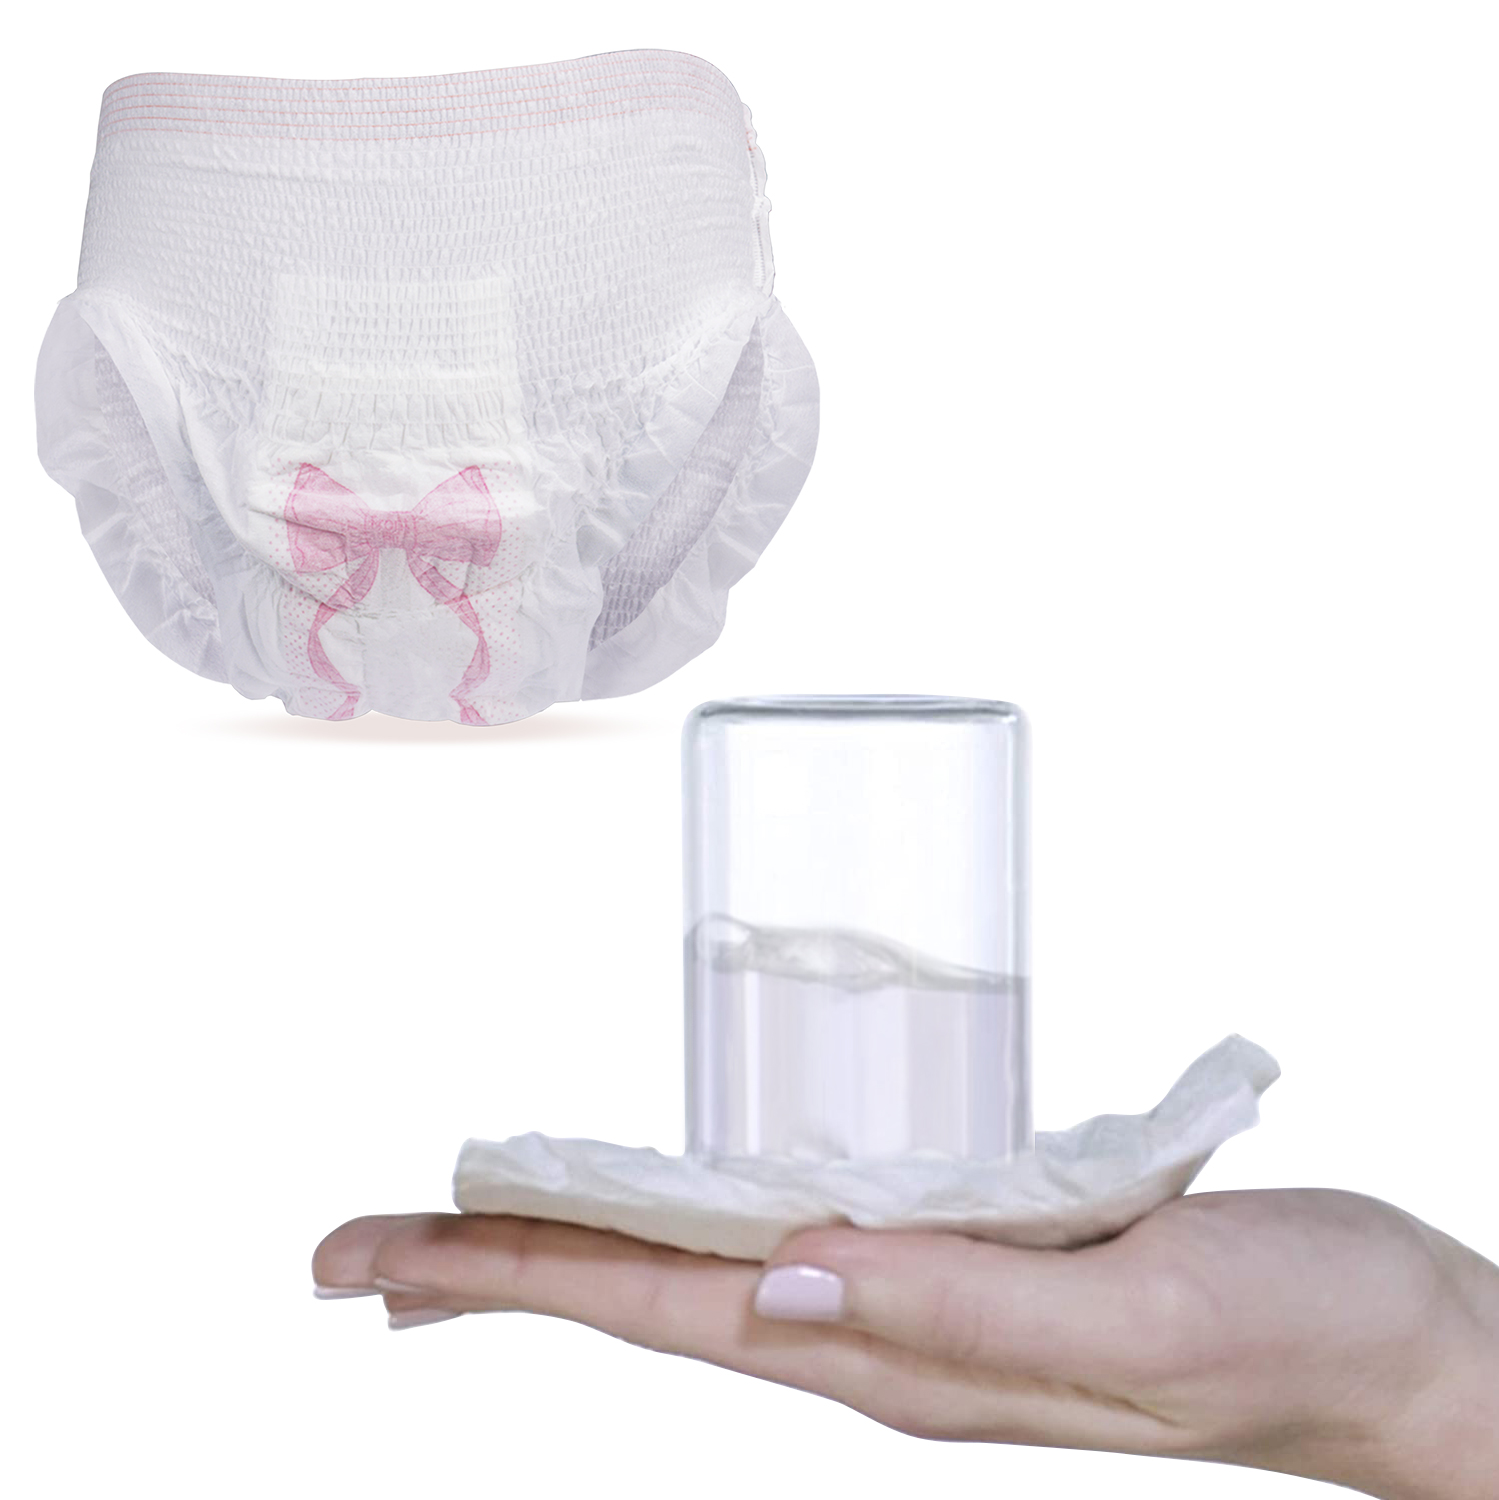 pantalóns menstruais